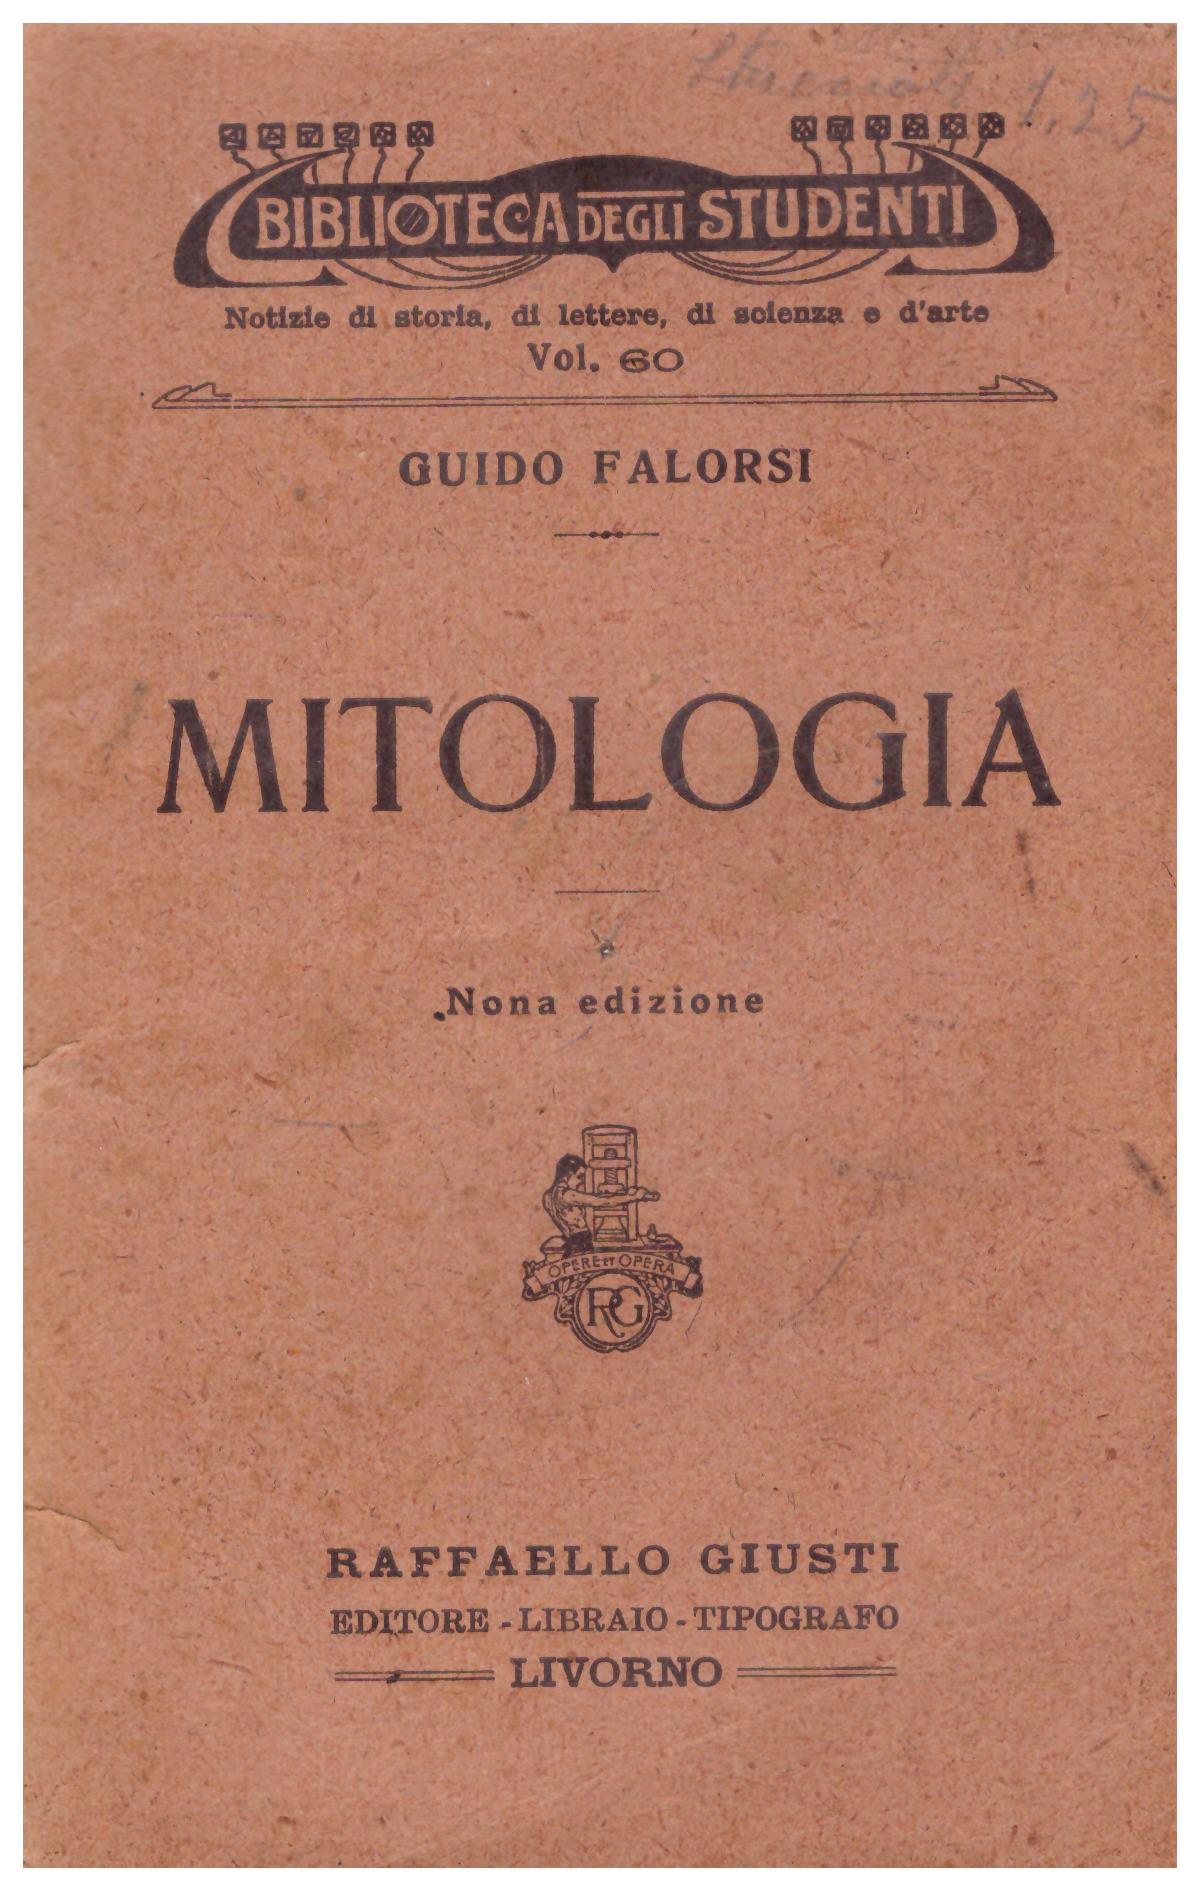 Titolo: Mitologia    Autore: Guido Falorsi     Editore: Raffaello Giusti, Livorno 1924